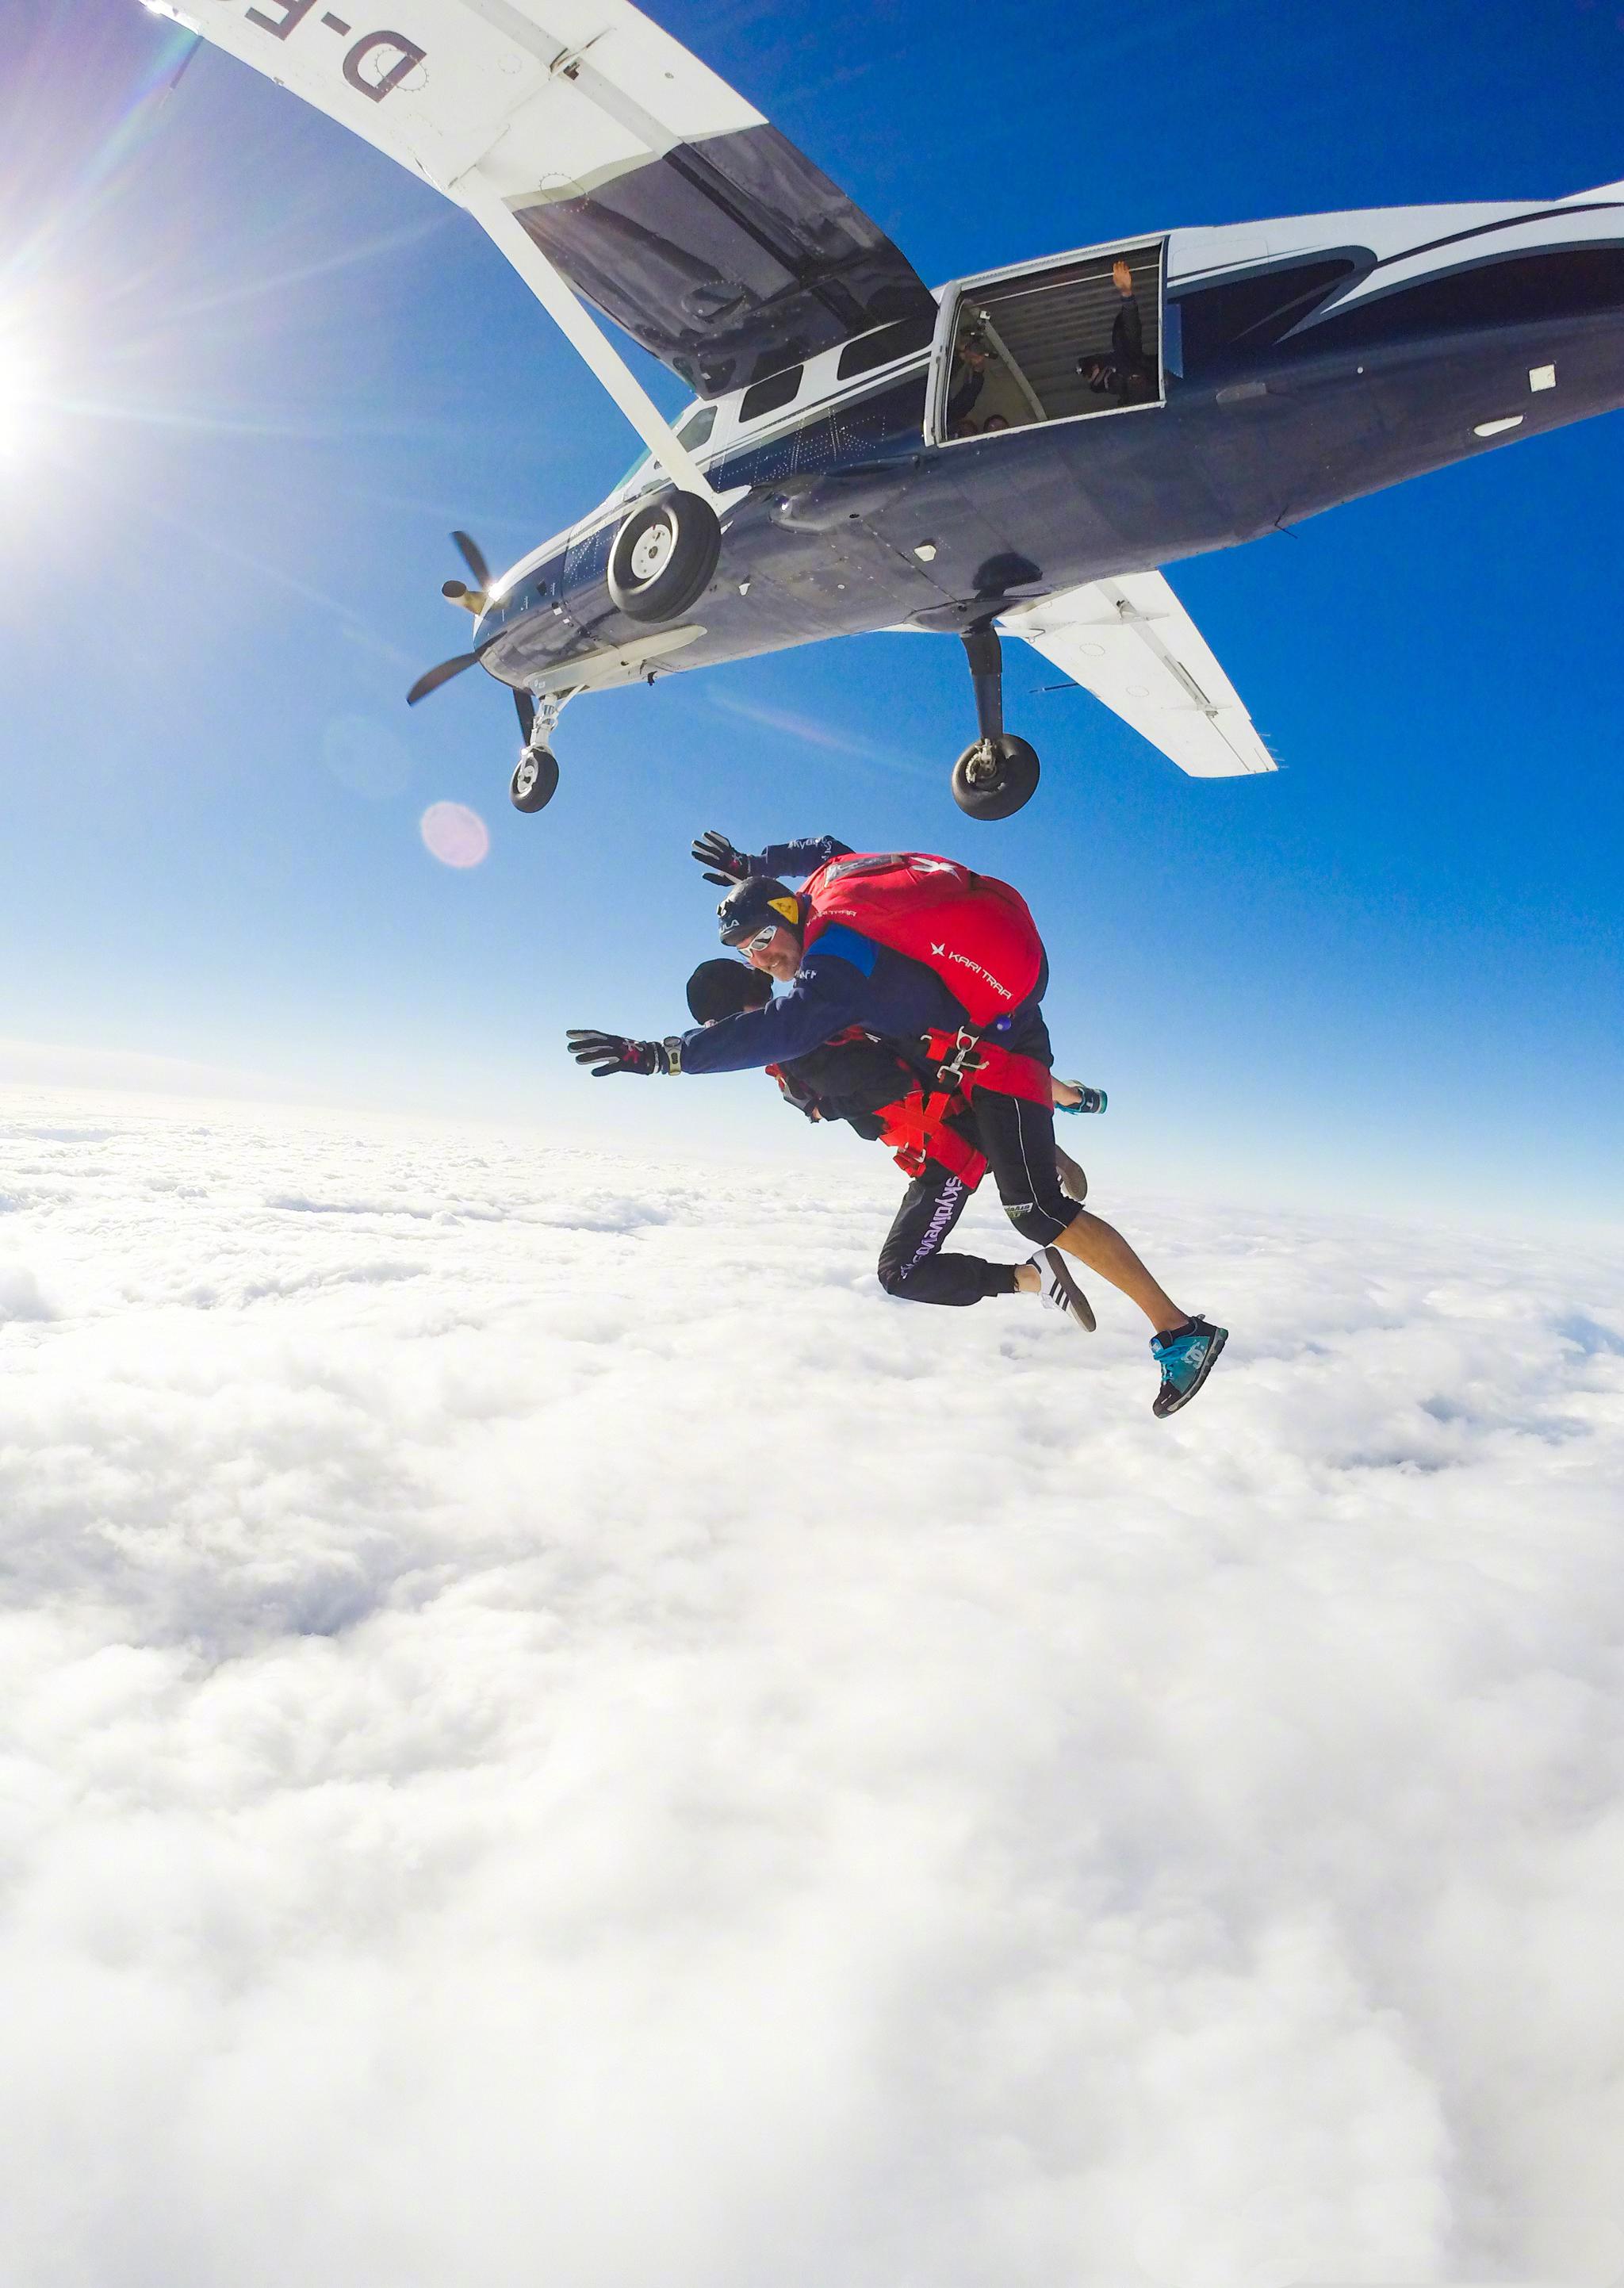 【新西兰高空跳伞胜地】皇后镇 Nzone Skydive 高空跳伞体验 - KKday